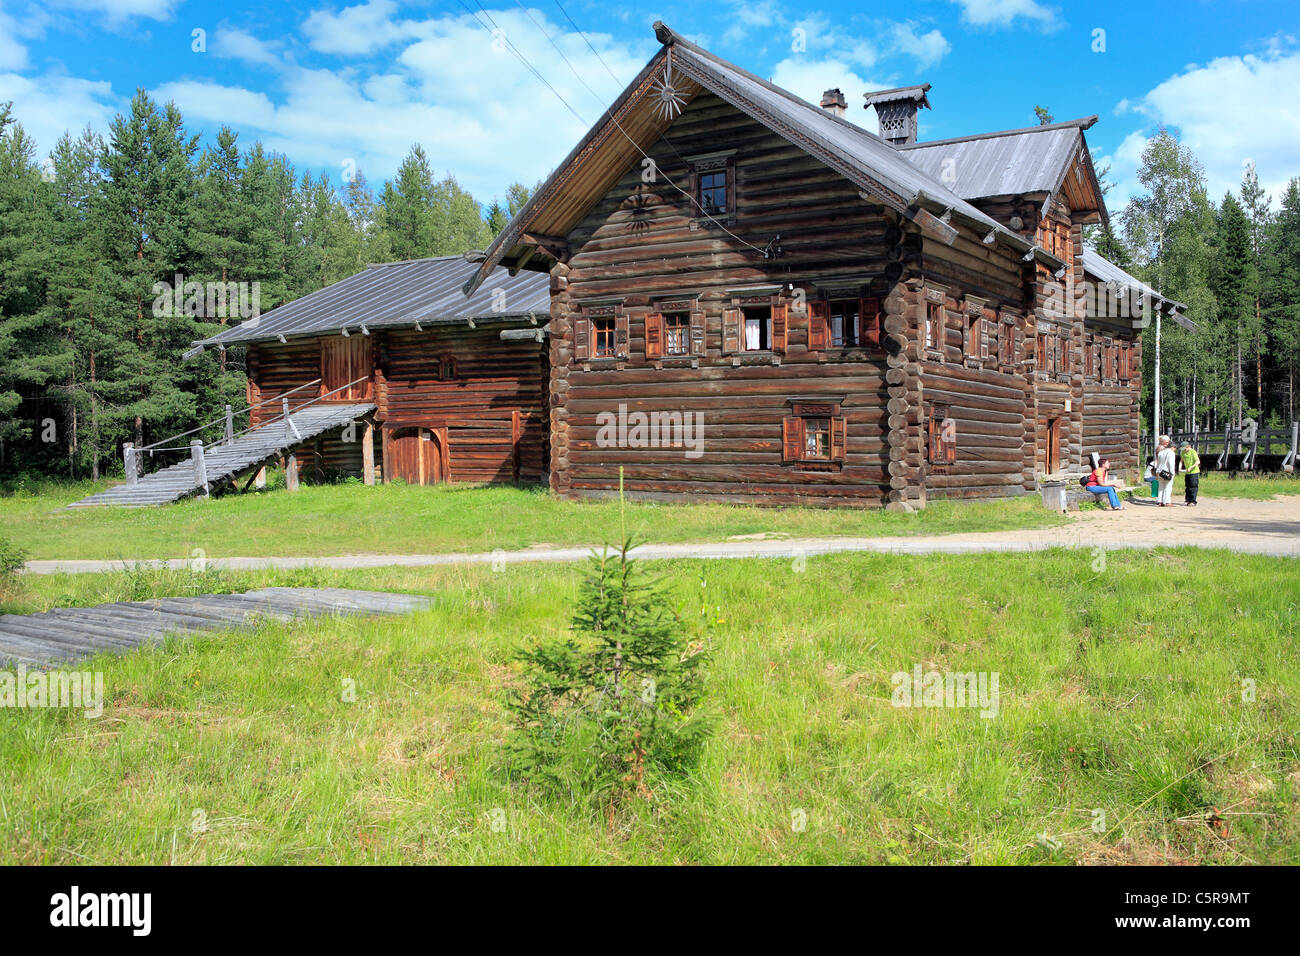 Holzhaus, Freilichtmuseum Holzarchitektur, Malye Korely, in der Nähe von Archangelsk, Archangelsk (Archangelsk) Region, Russland Stockfoto